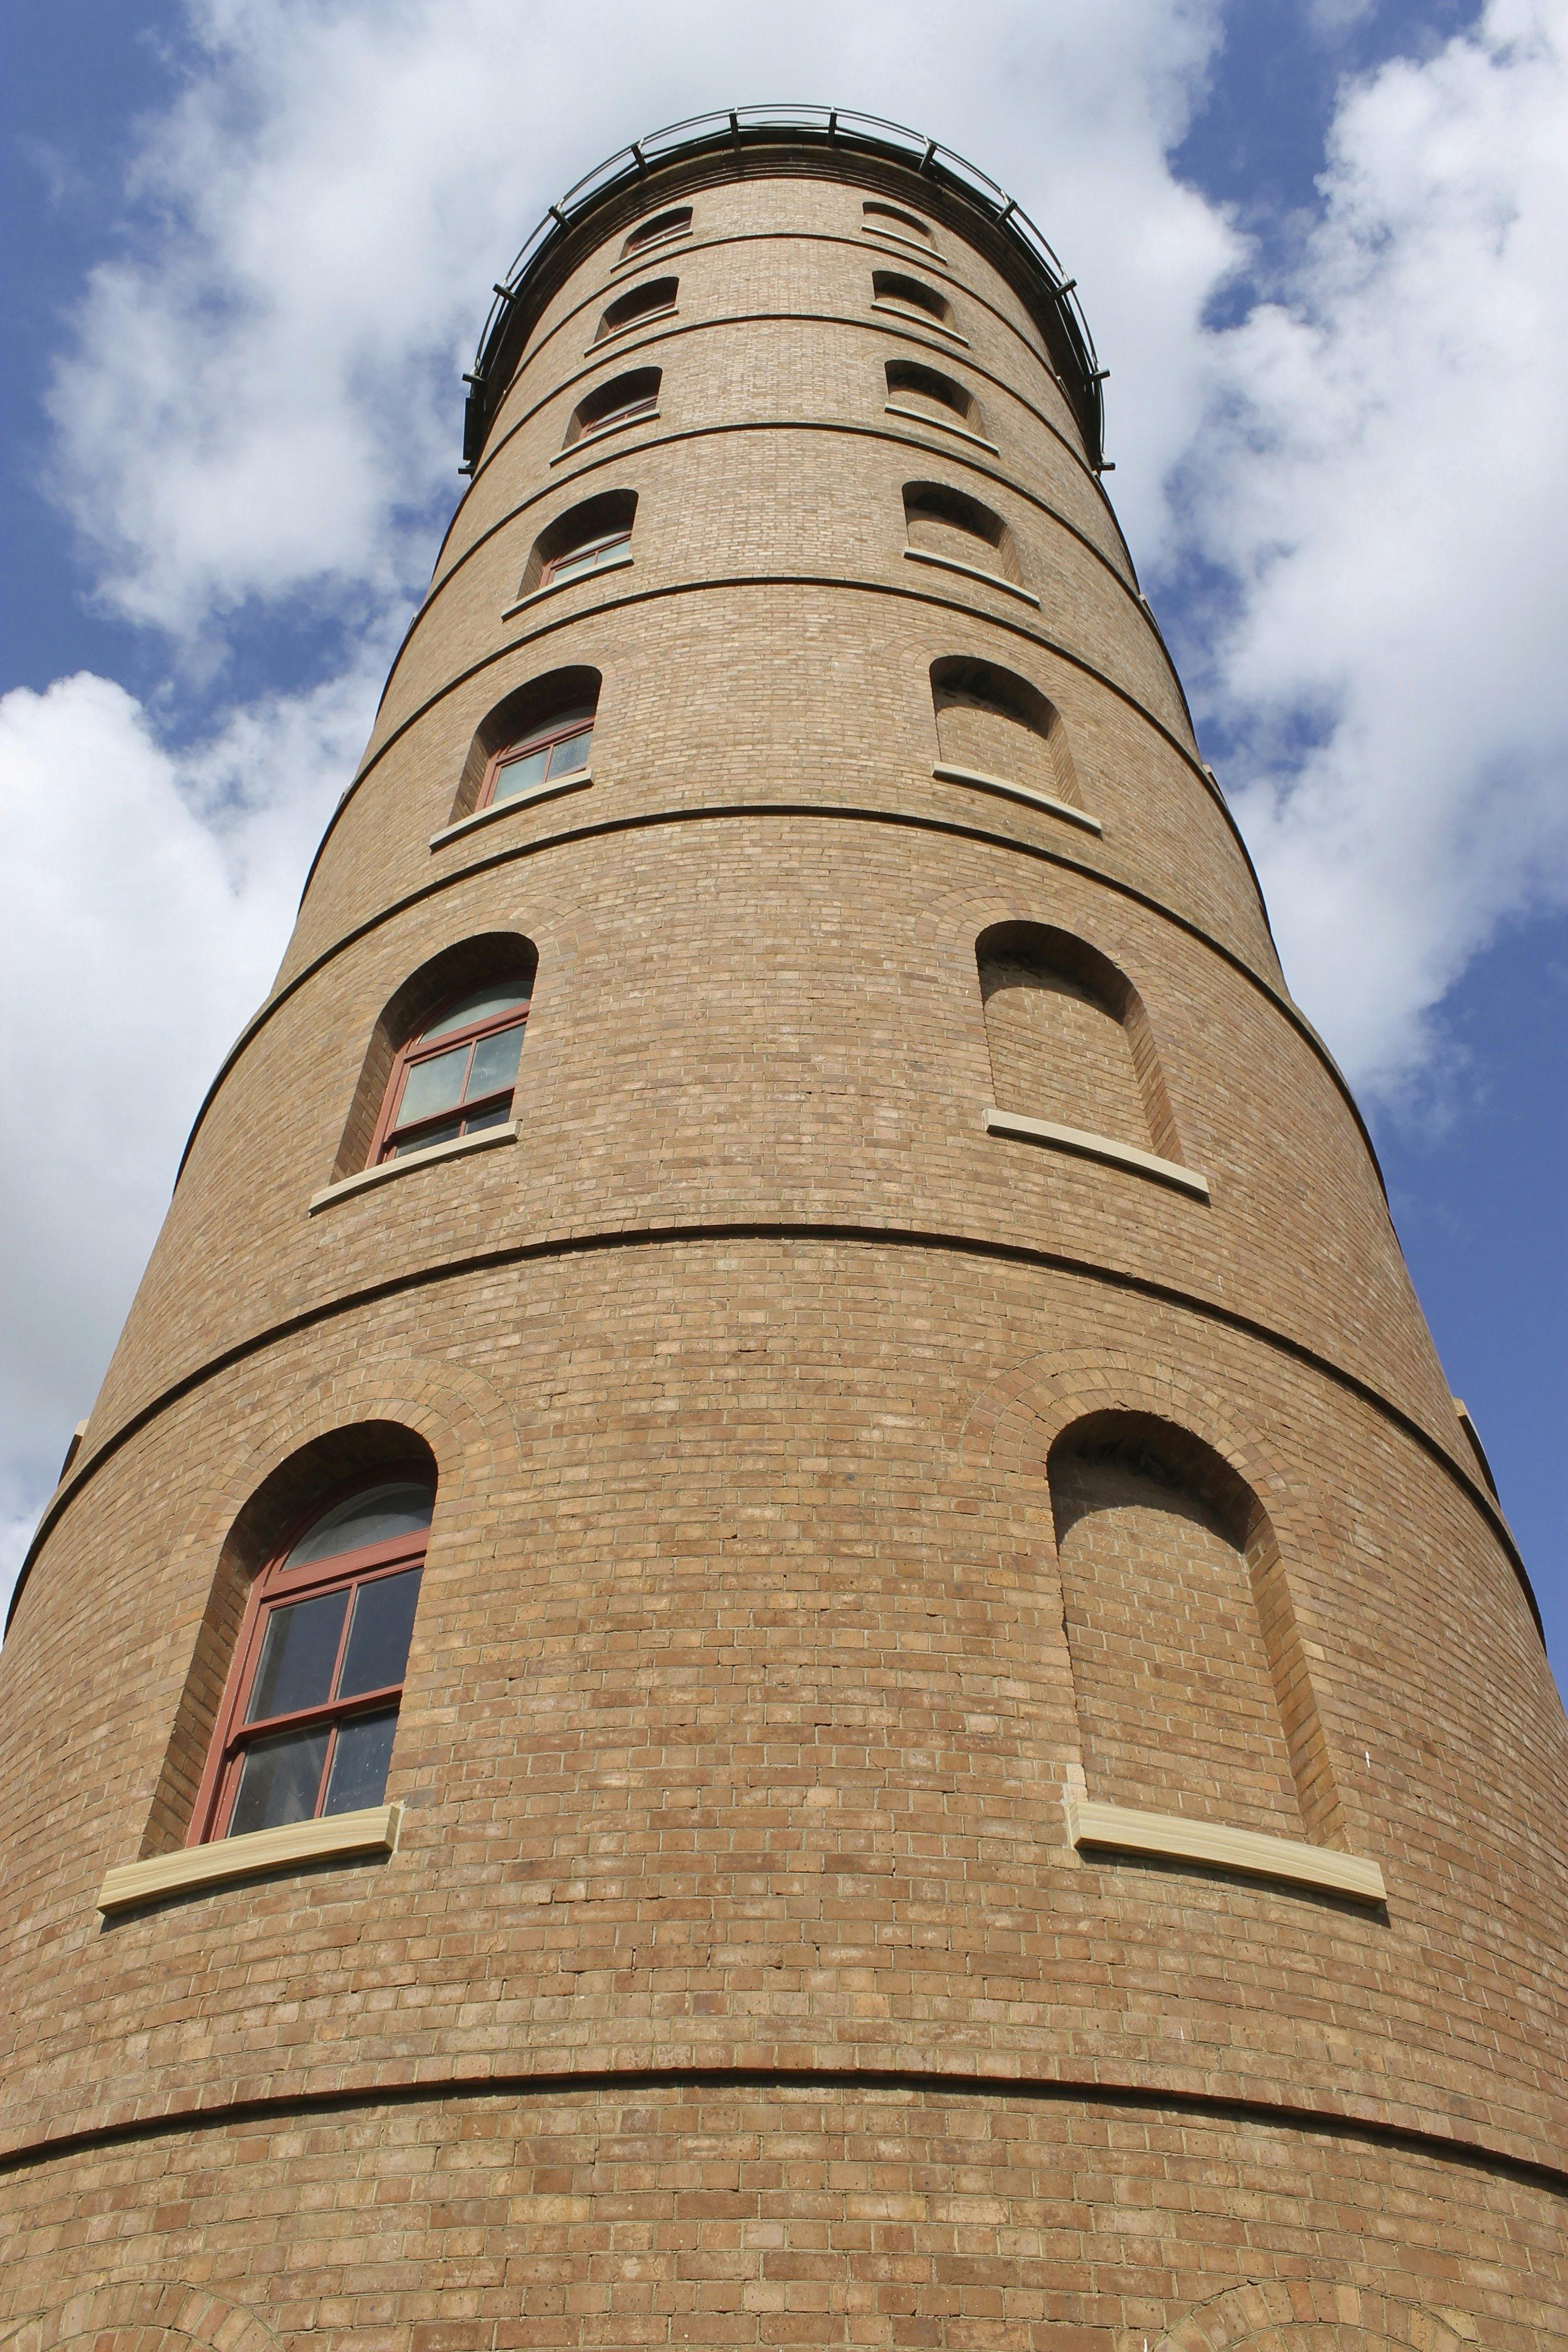 East  Bundaberg Water Tower